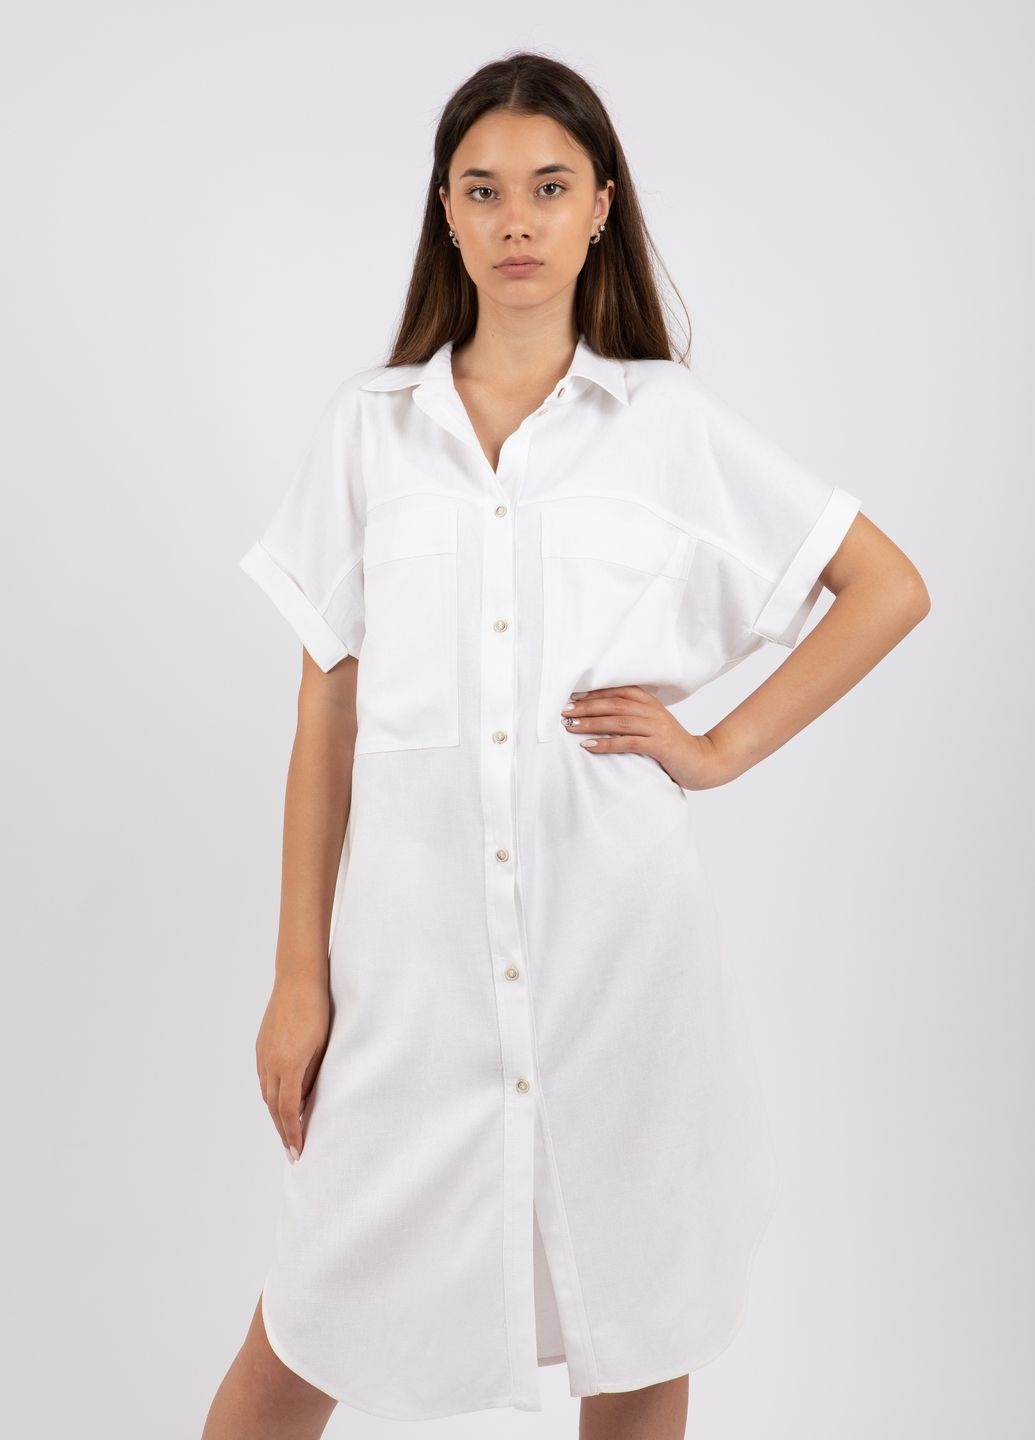 Купить Льняное платье-рубашка Merlini Орлеан 700000002 - Белый, 42-44 в интернет-магазине